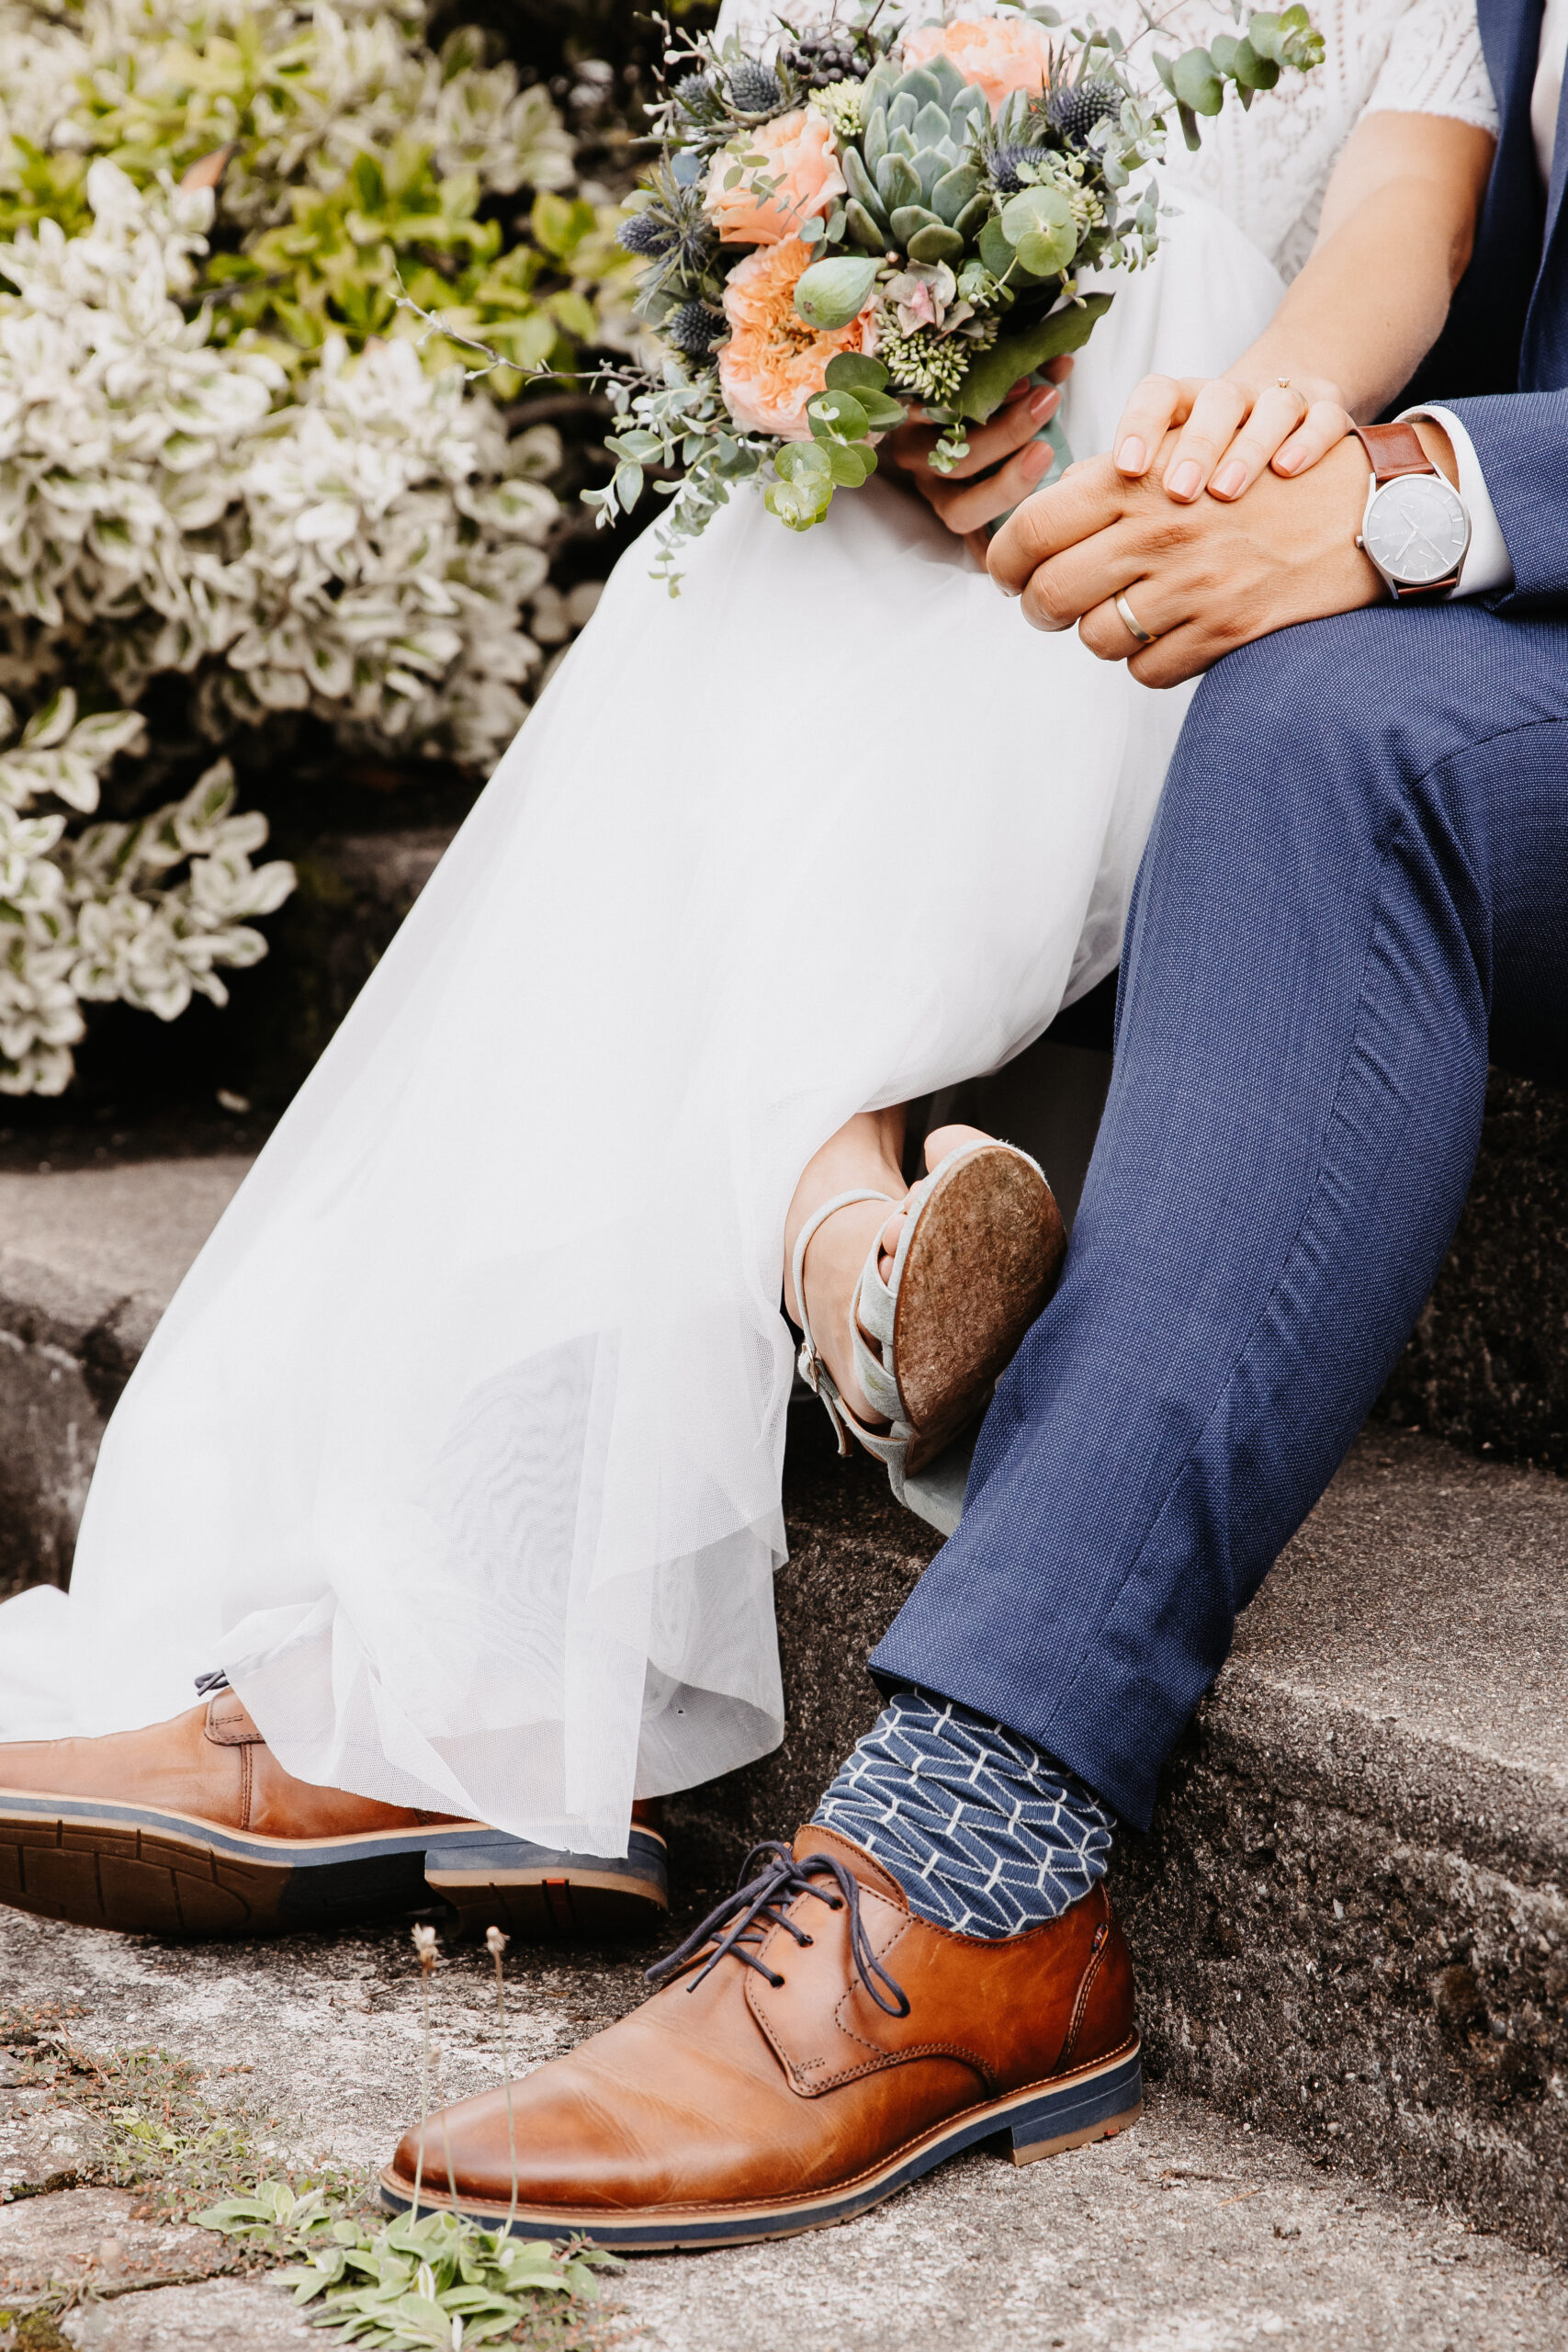 Brautpaar hält sich während dem Brautpaarshooting sitzend die Hand und es ist eine Detailaufnahme des unteren Körper Bereichs. Füsse, Hände und Beine. Der Bräutigam trägt einen blauen Anzug und sie ein weißes Hochzeitskleid.